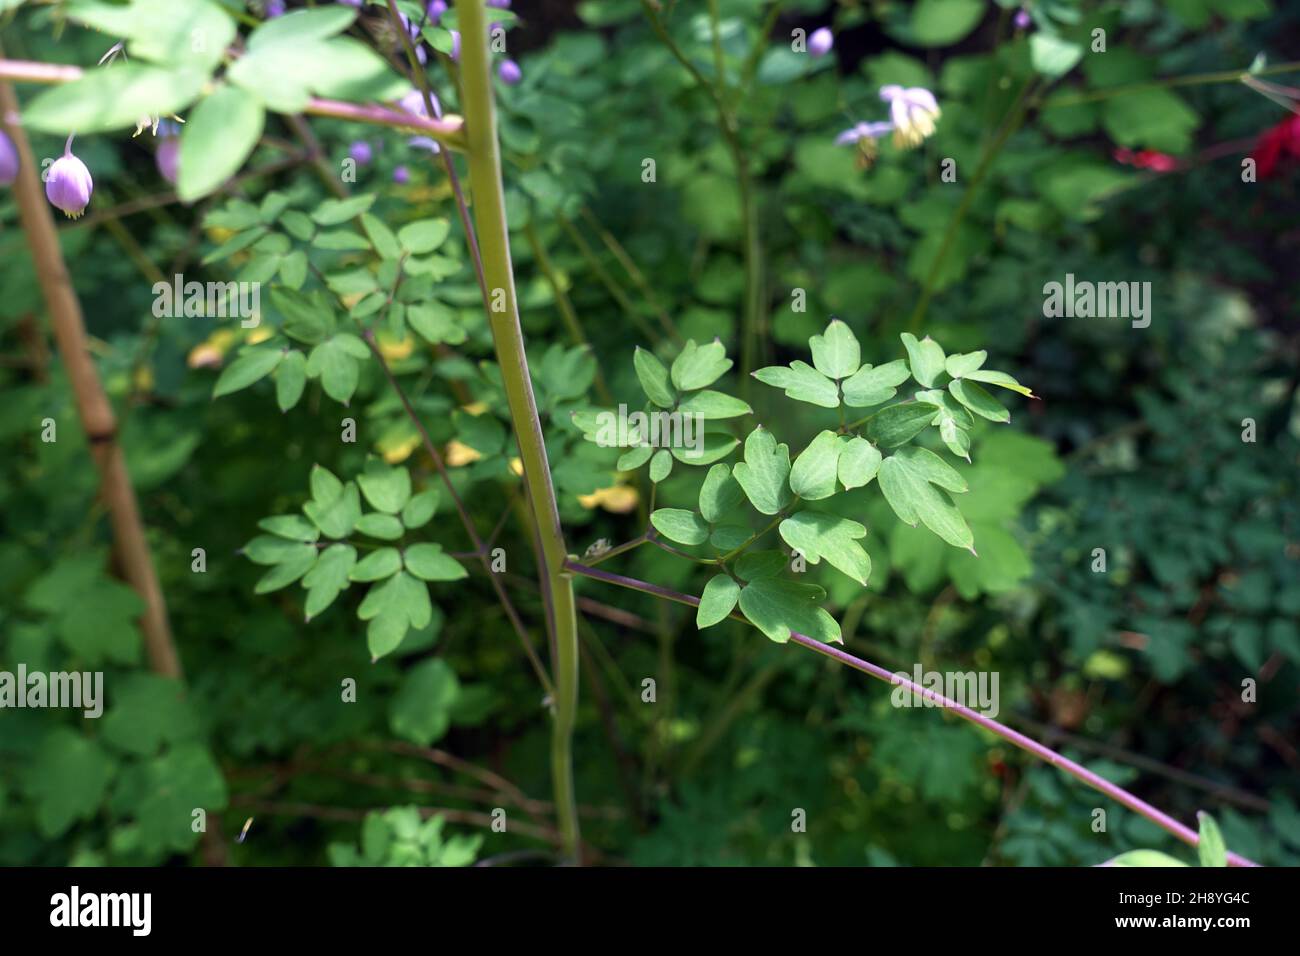 Thalictrum delavayi (syn. Thalictrum dipterocarpum), Chinesische Wiesenraute, China-Wiesenraute - Blätter, Nordrhein-Westfalen, Deutschland, Köln - Th Stock Photo